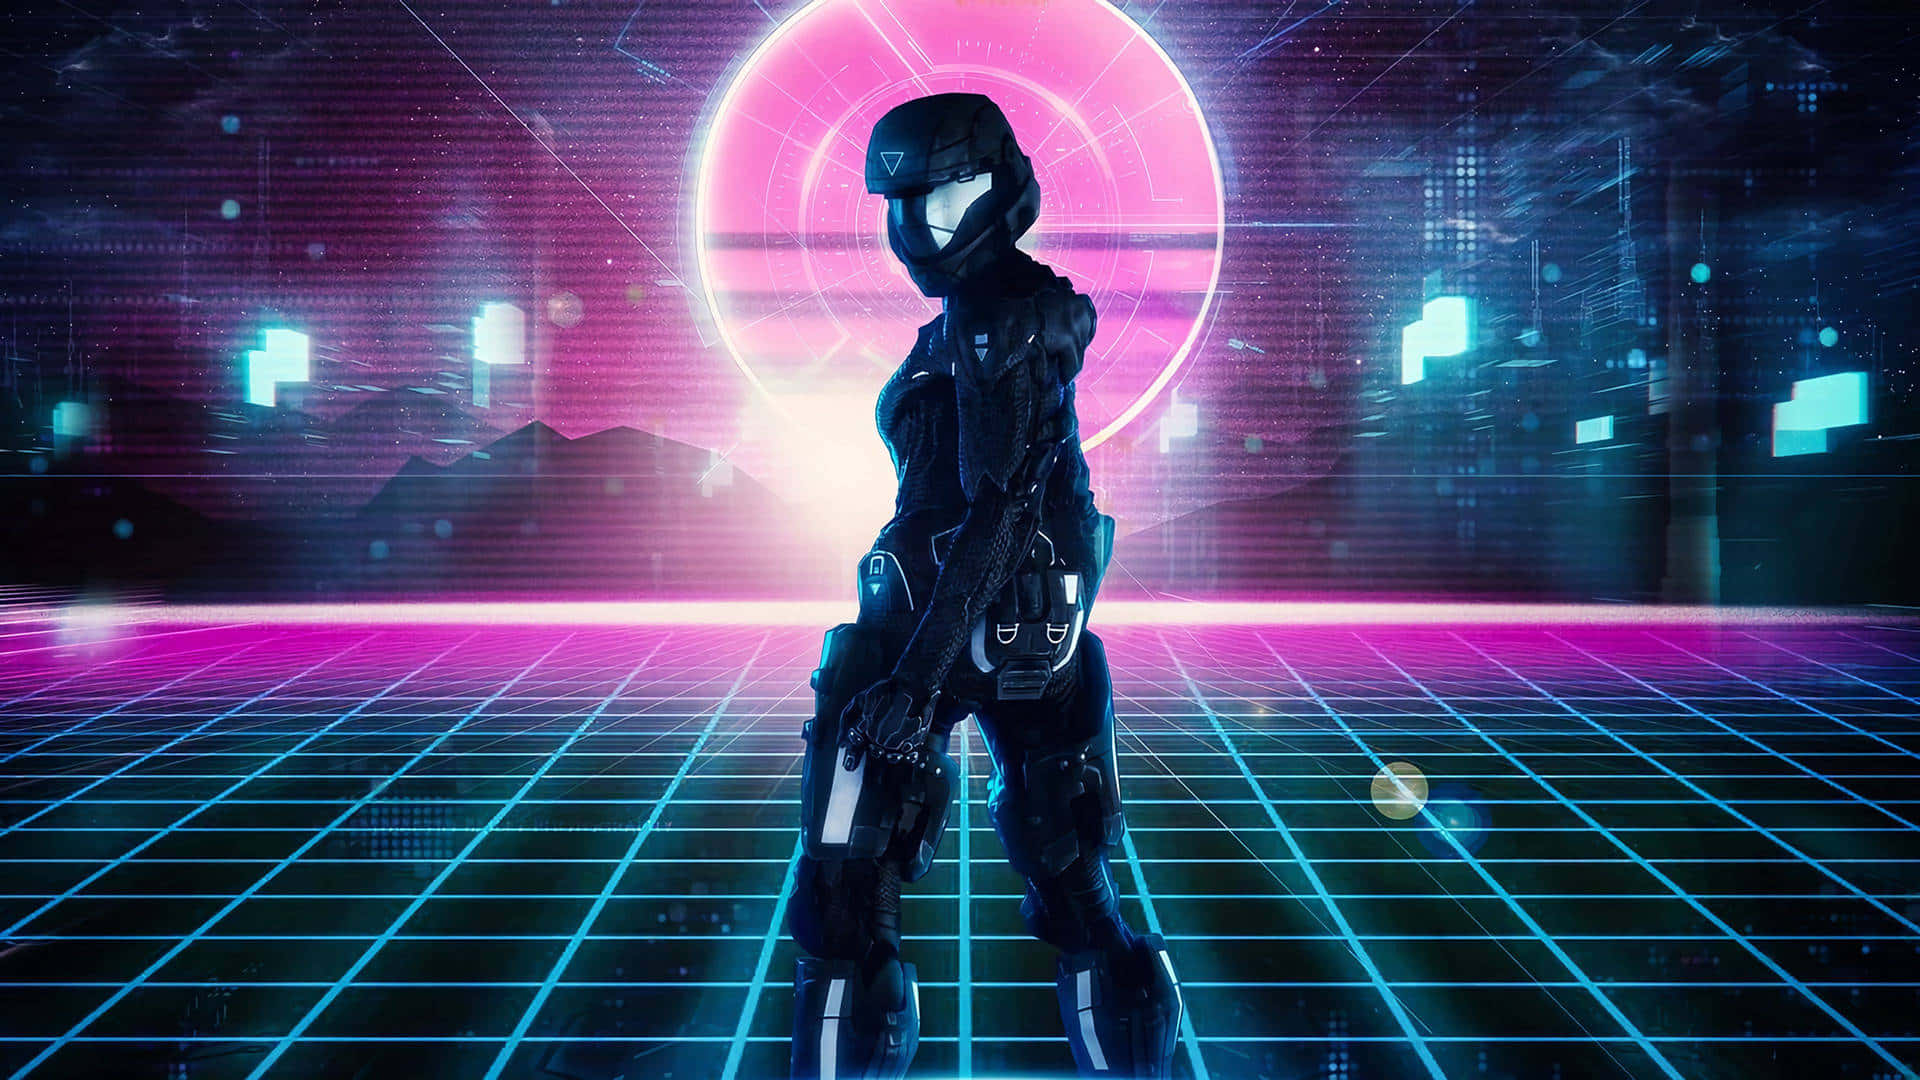 Eineneon-beleuchtete Cyberpunk-landschaft In Einer Zukünftigen Dystopie. Wallpaper